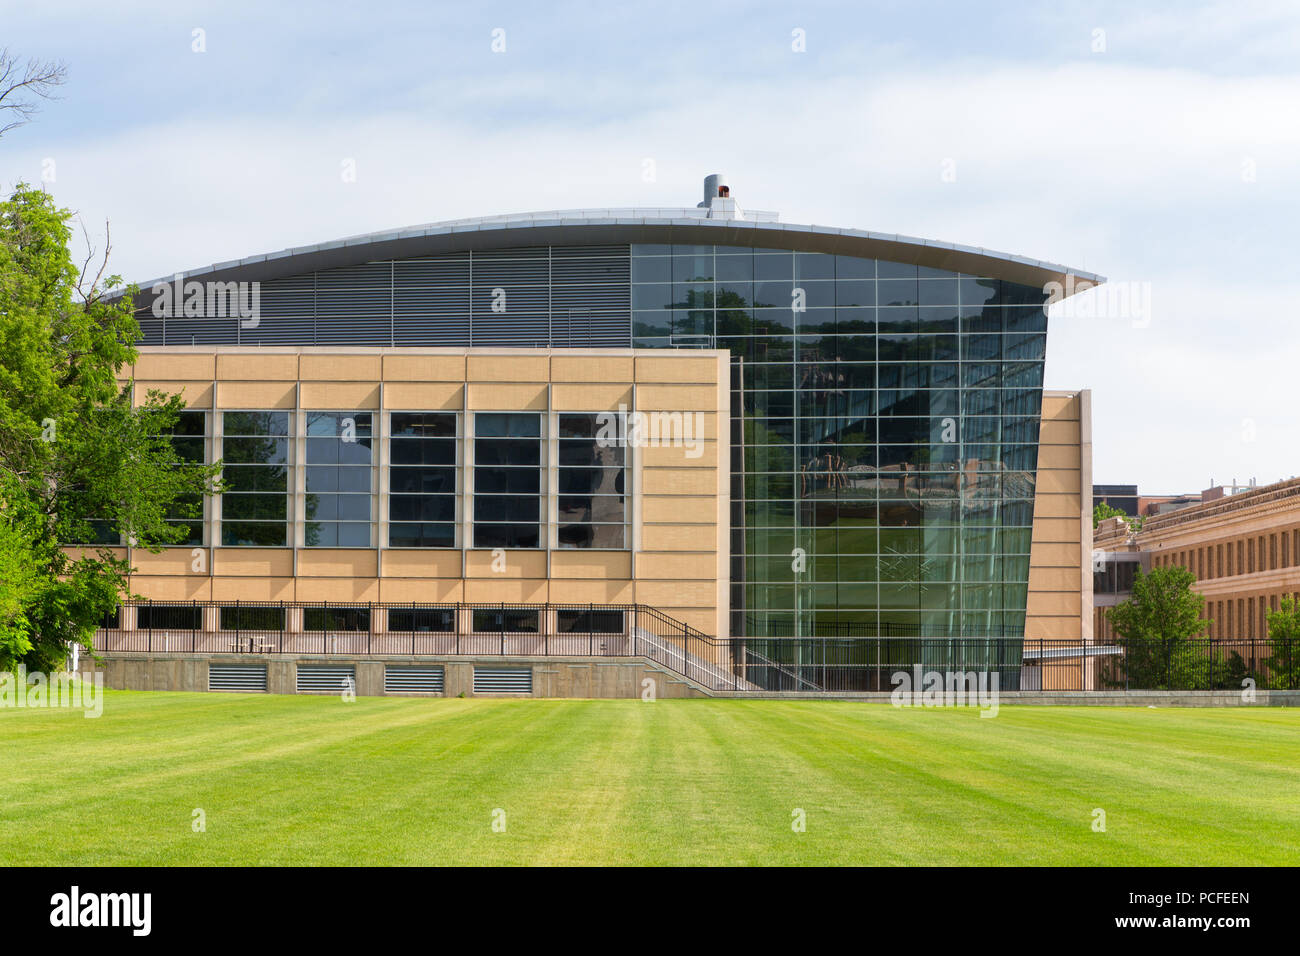 MADISON, WI/USA - 26. JUNI 2014: Fachbereich Maschinenbau auf dem Campus der Universität von Wisconsin-Madison. Stockfoto